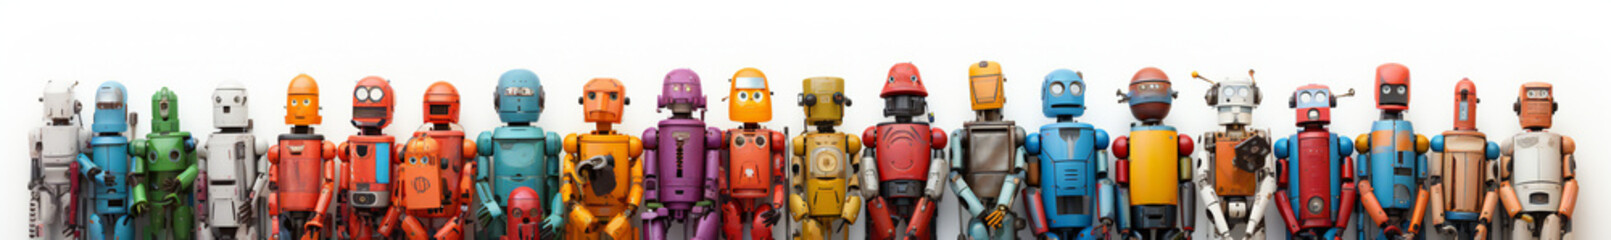 A row of funny Robots, lined up, cartoon, fantasy, fun, happy, friendly